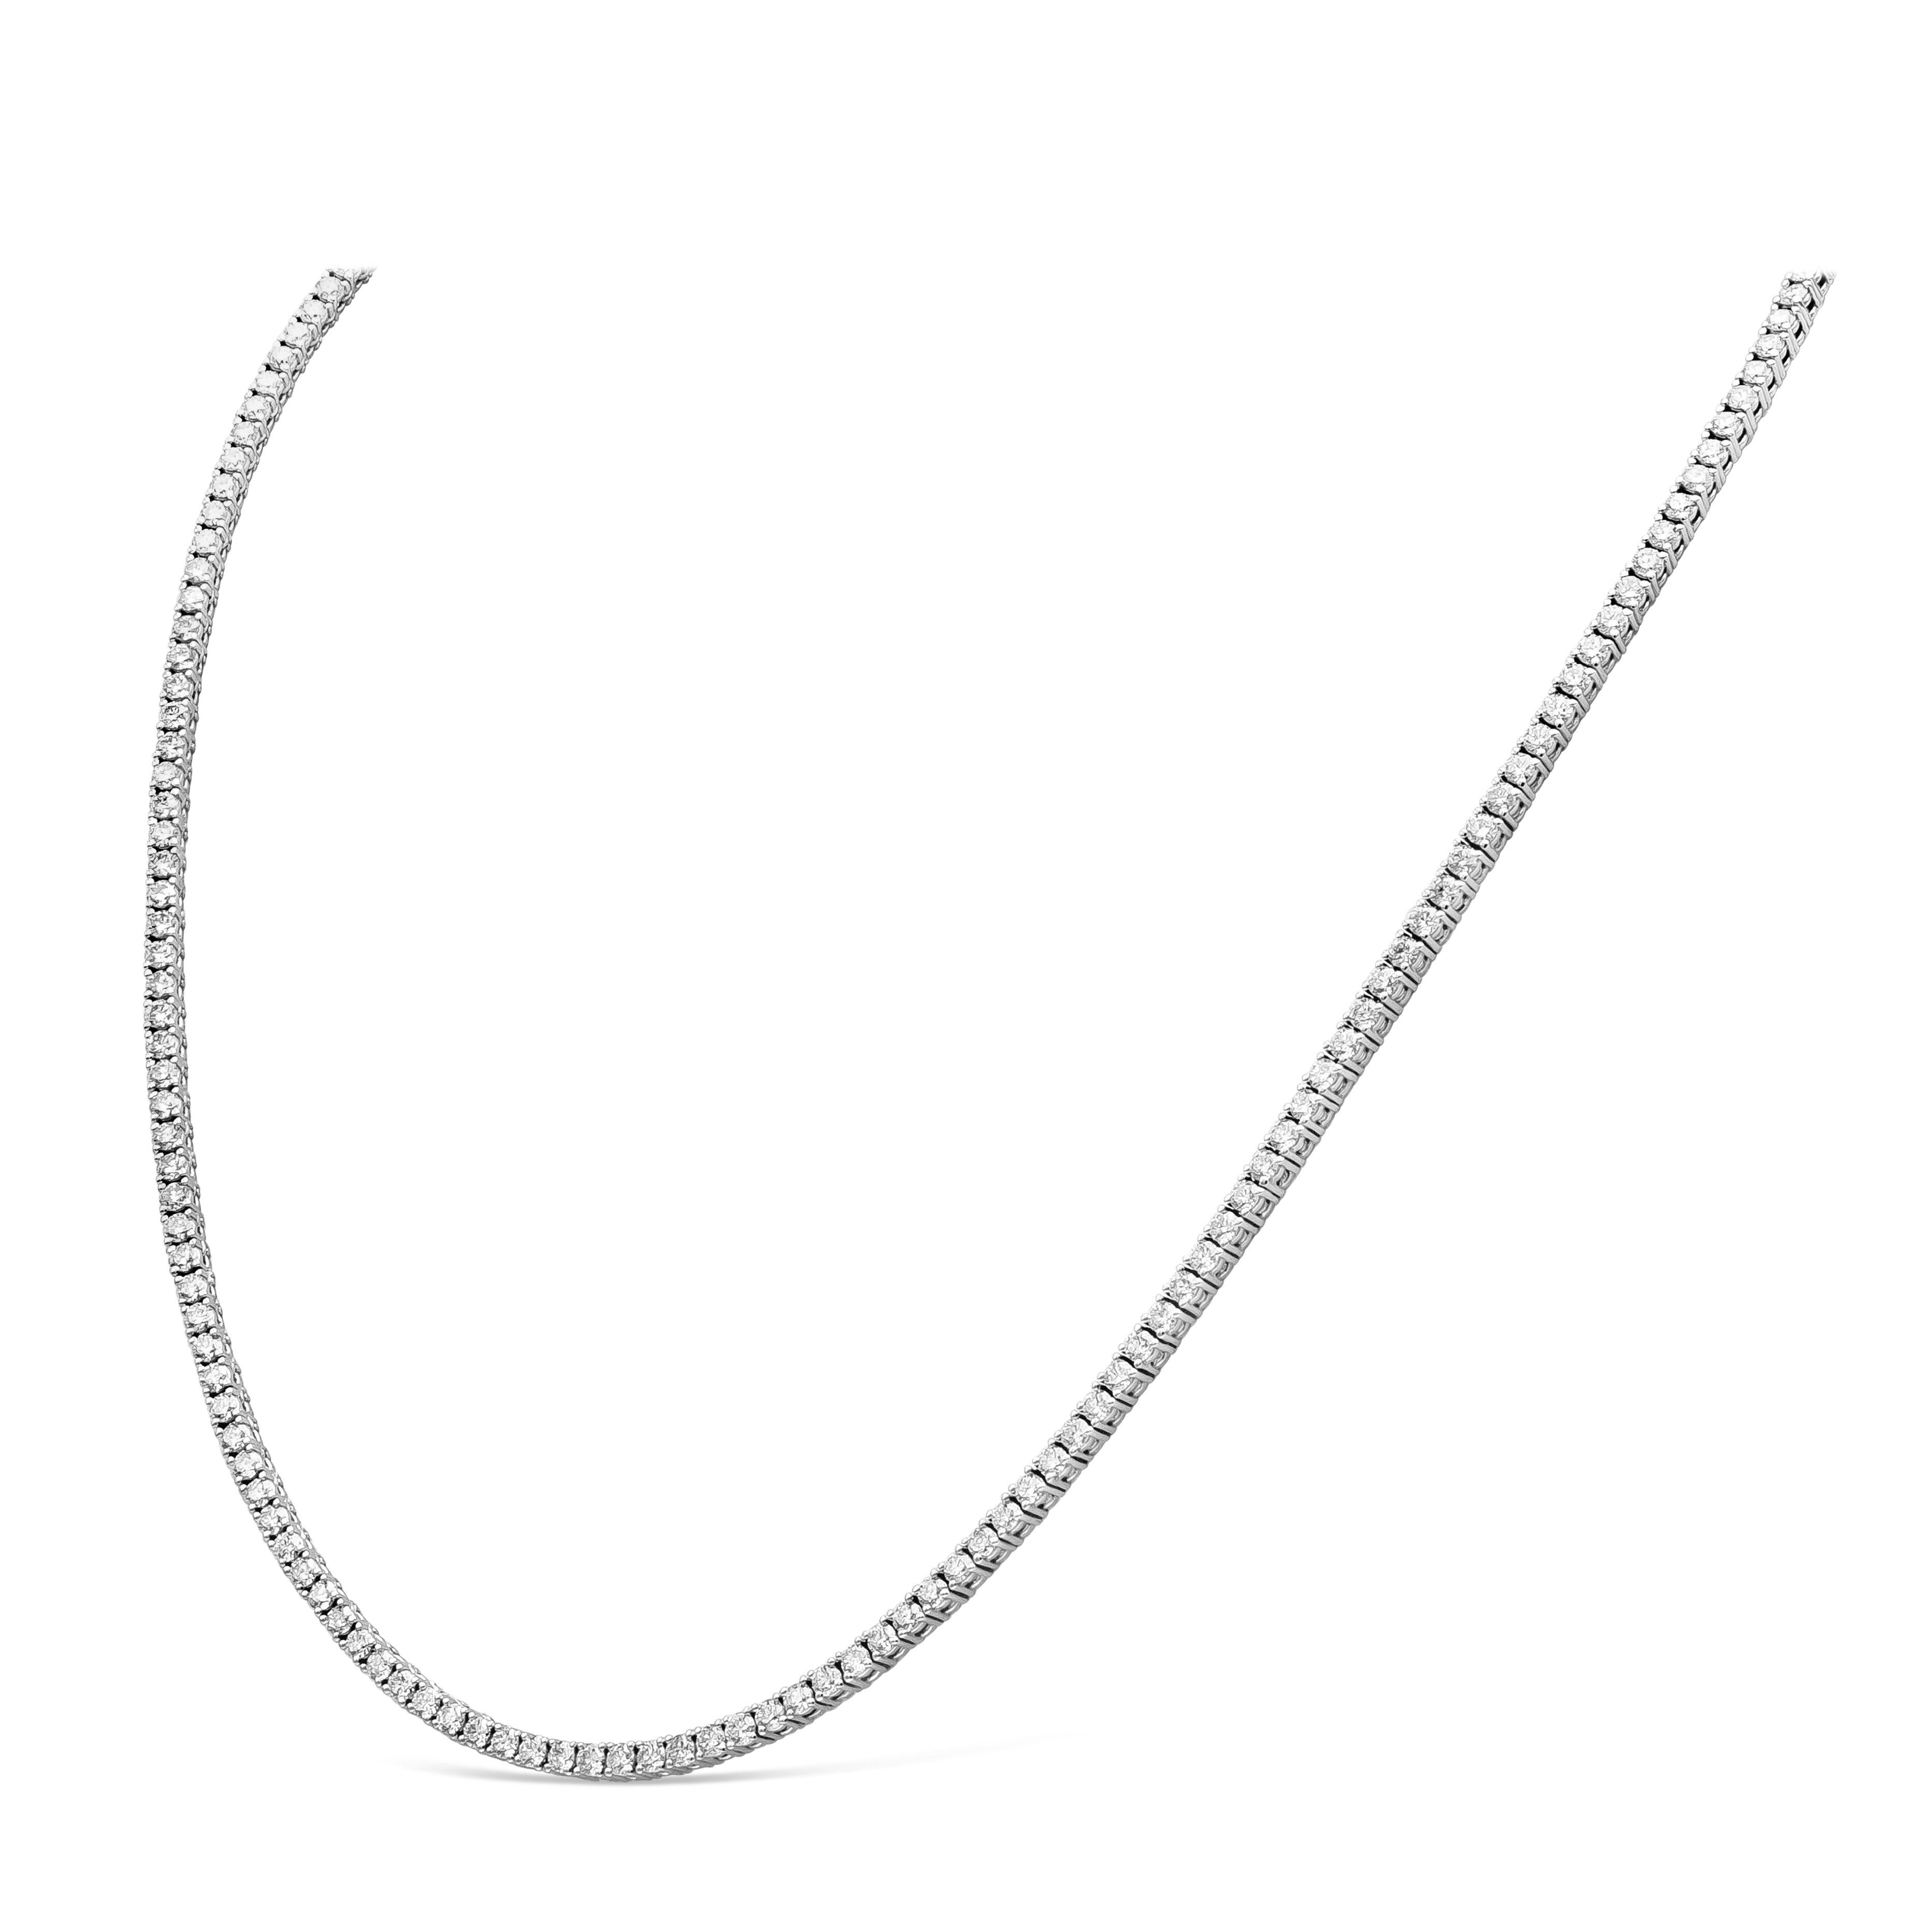 Eine klassische Tennis-Halskette mit 192 runden Brillanten in einer polierten Fassung aus 18 Karat Weißgold. Diamanten wiegen 7,30 Karat insgesamt und sind etwa F Farbe, VS-SI Klarheit. 18 Zoll in Länge.

Roman Malakov ist ein Unternehmen, das sich